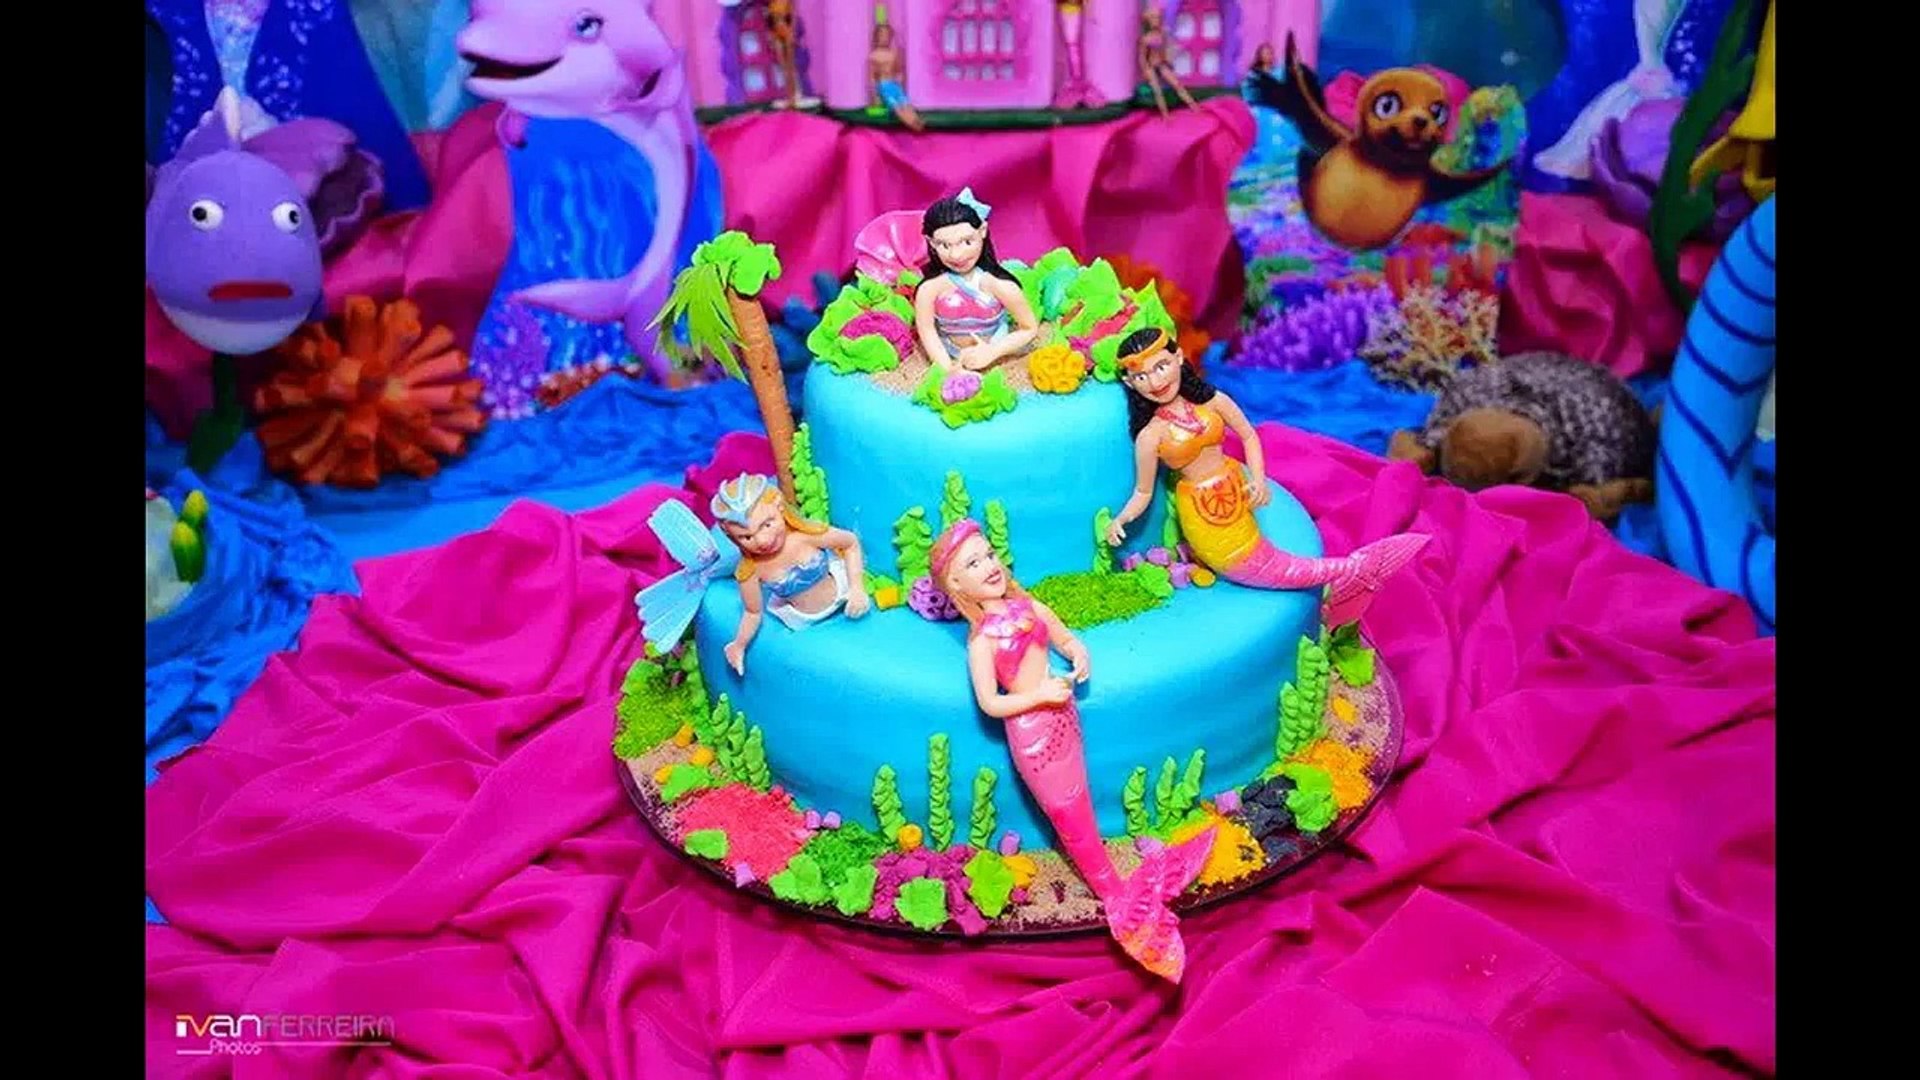 Bolos decorados Barbie Sereia para festa infantil - Vídeo Dailymotion